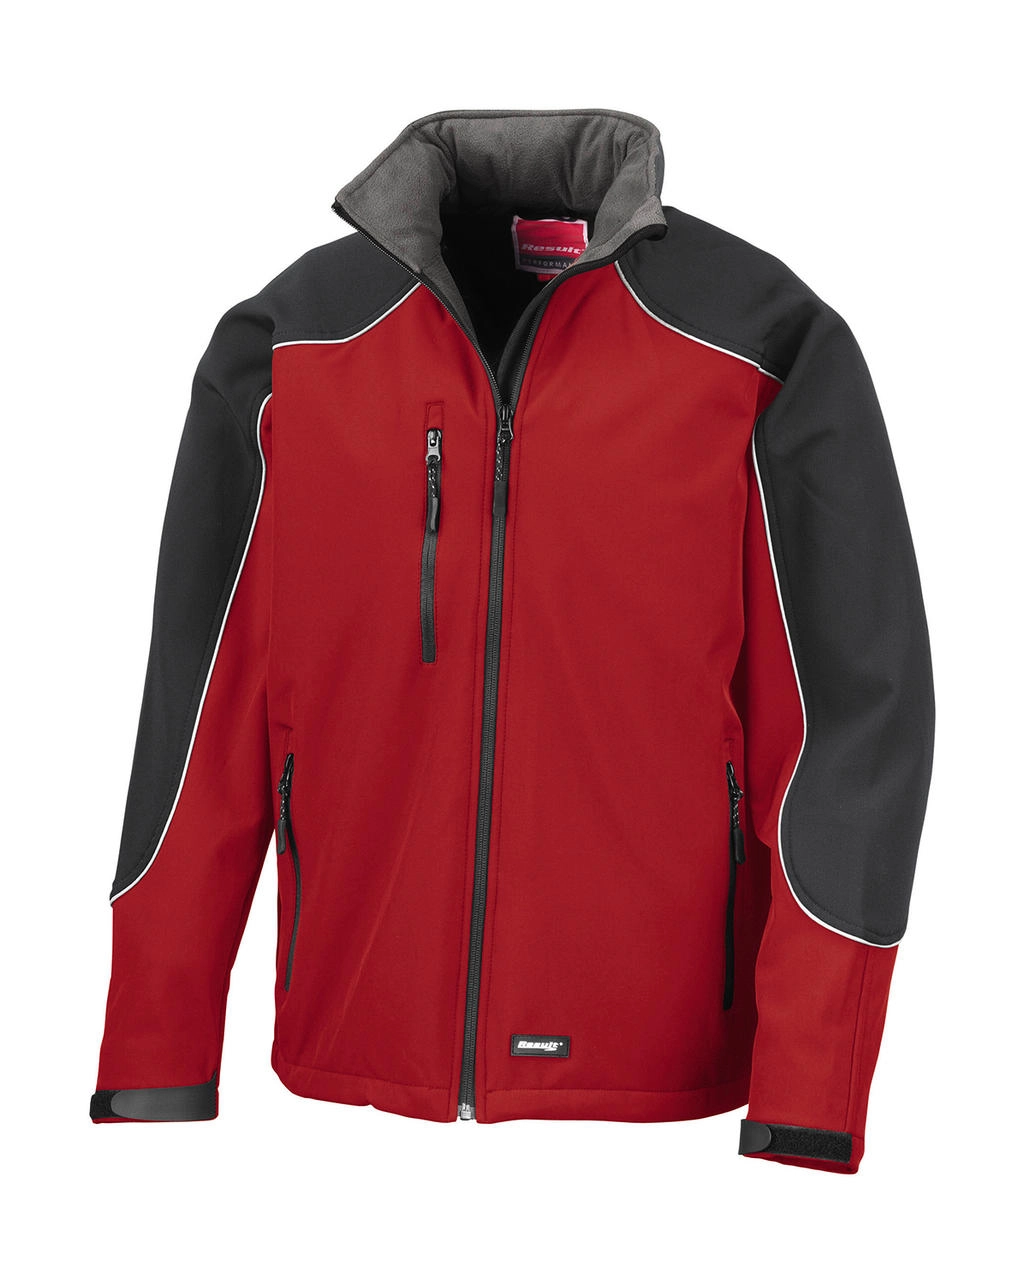 Ice Fell Hooded Softshell Jacket zum Besticken und Bedrucken in der Farbe Red/Black mit Ihren Logo, Schriftzug oder Motiv.